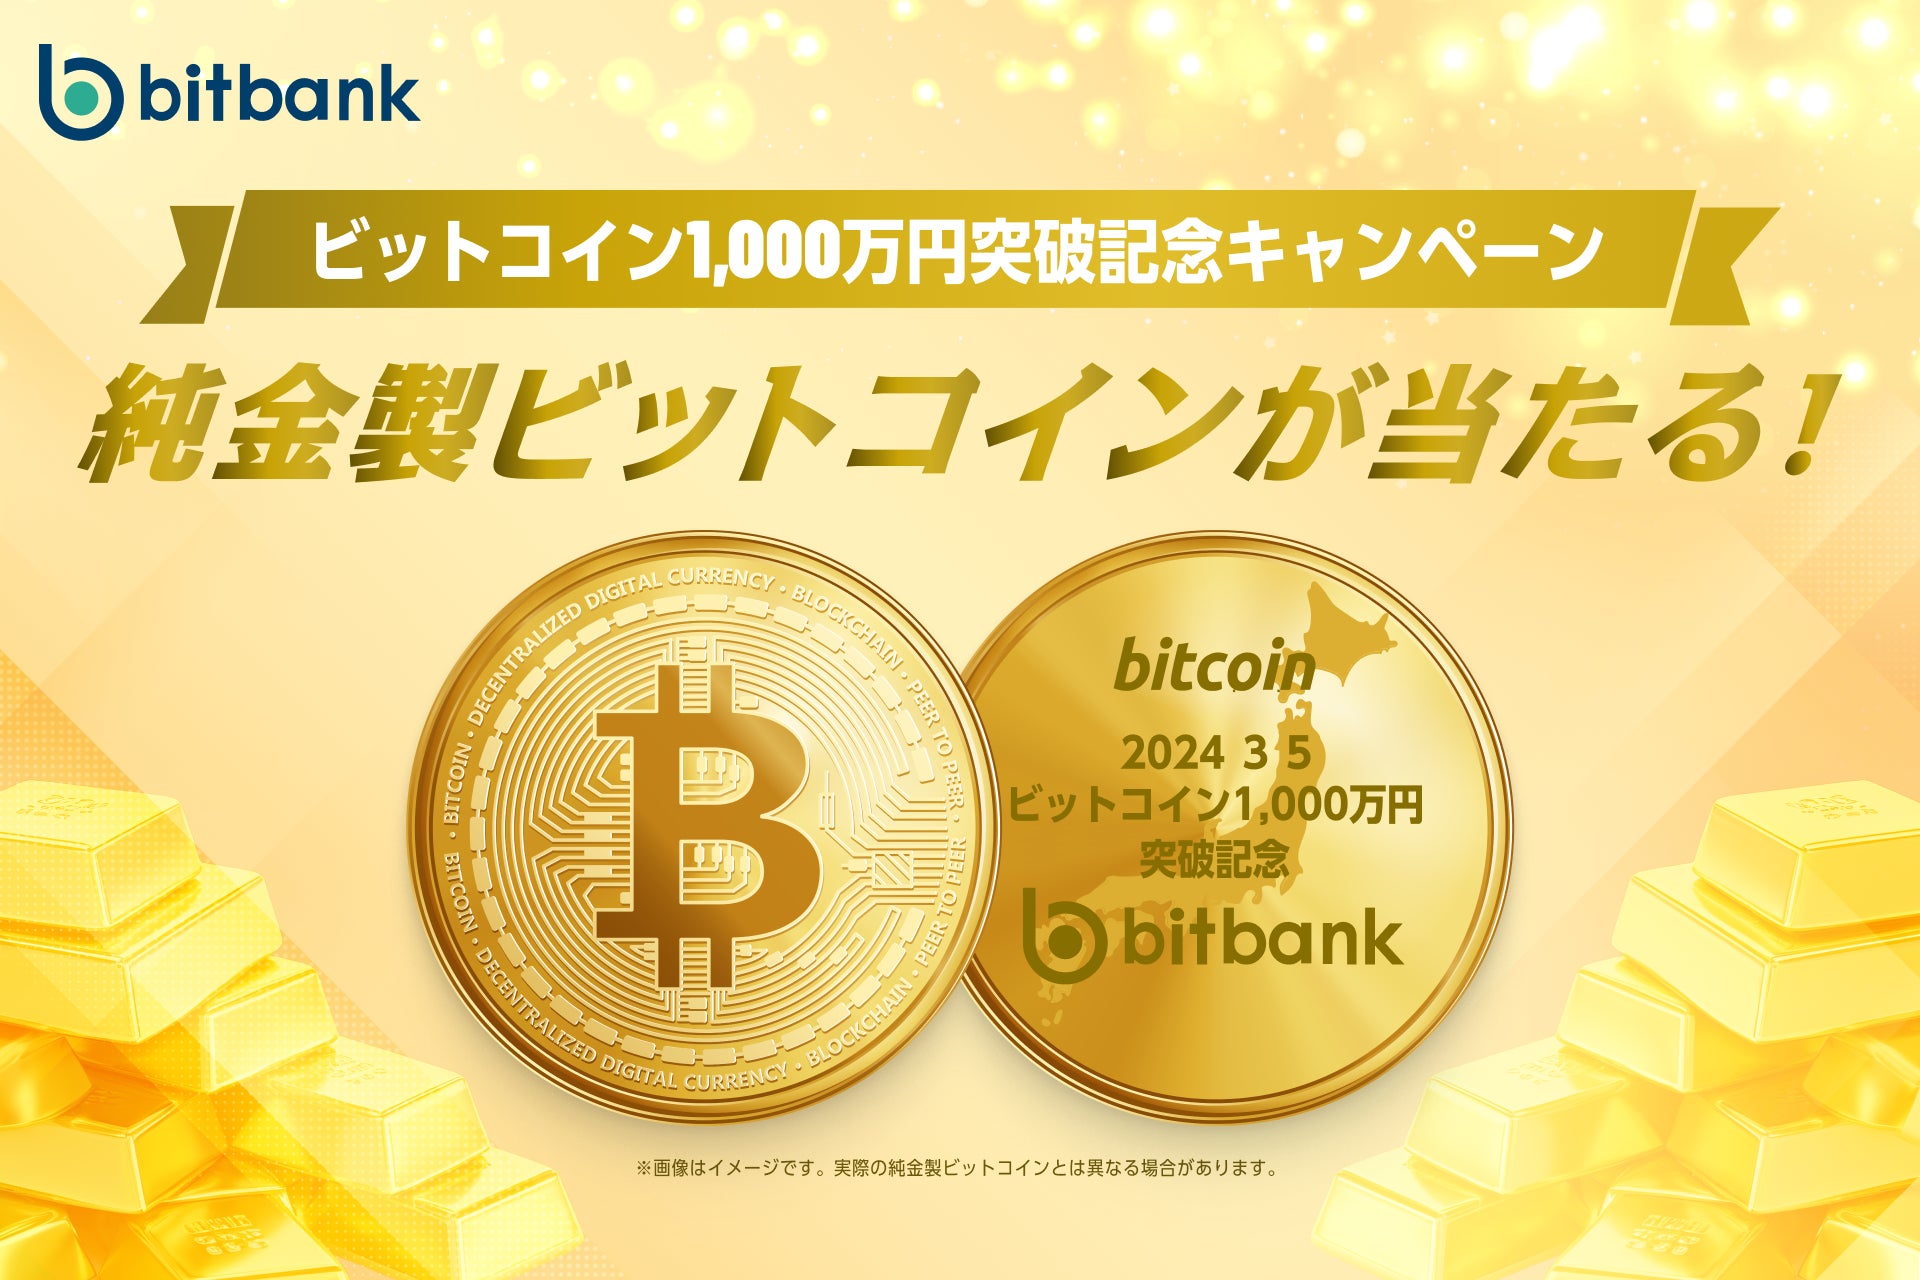 【暗号資産取引ならビットバンク】純金製ビットコインが当たる！「ビットコイン1,000万円突破記念キャンペーン」を開催